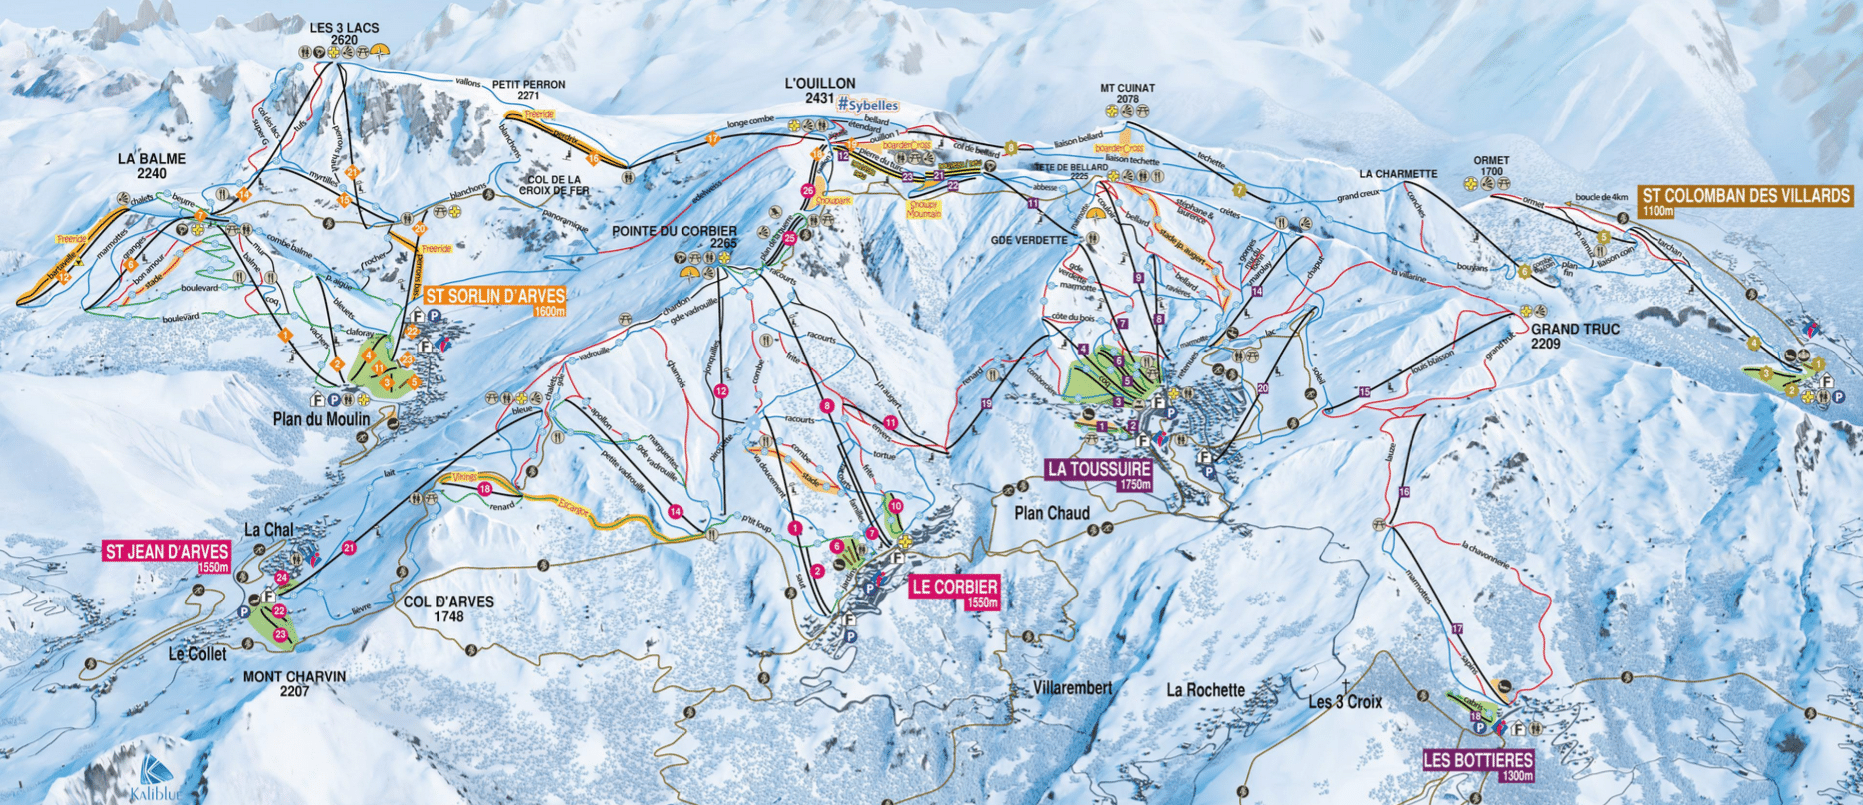 Les sybelles - Plan des pistes de ski